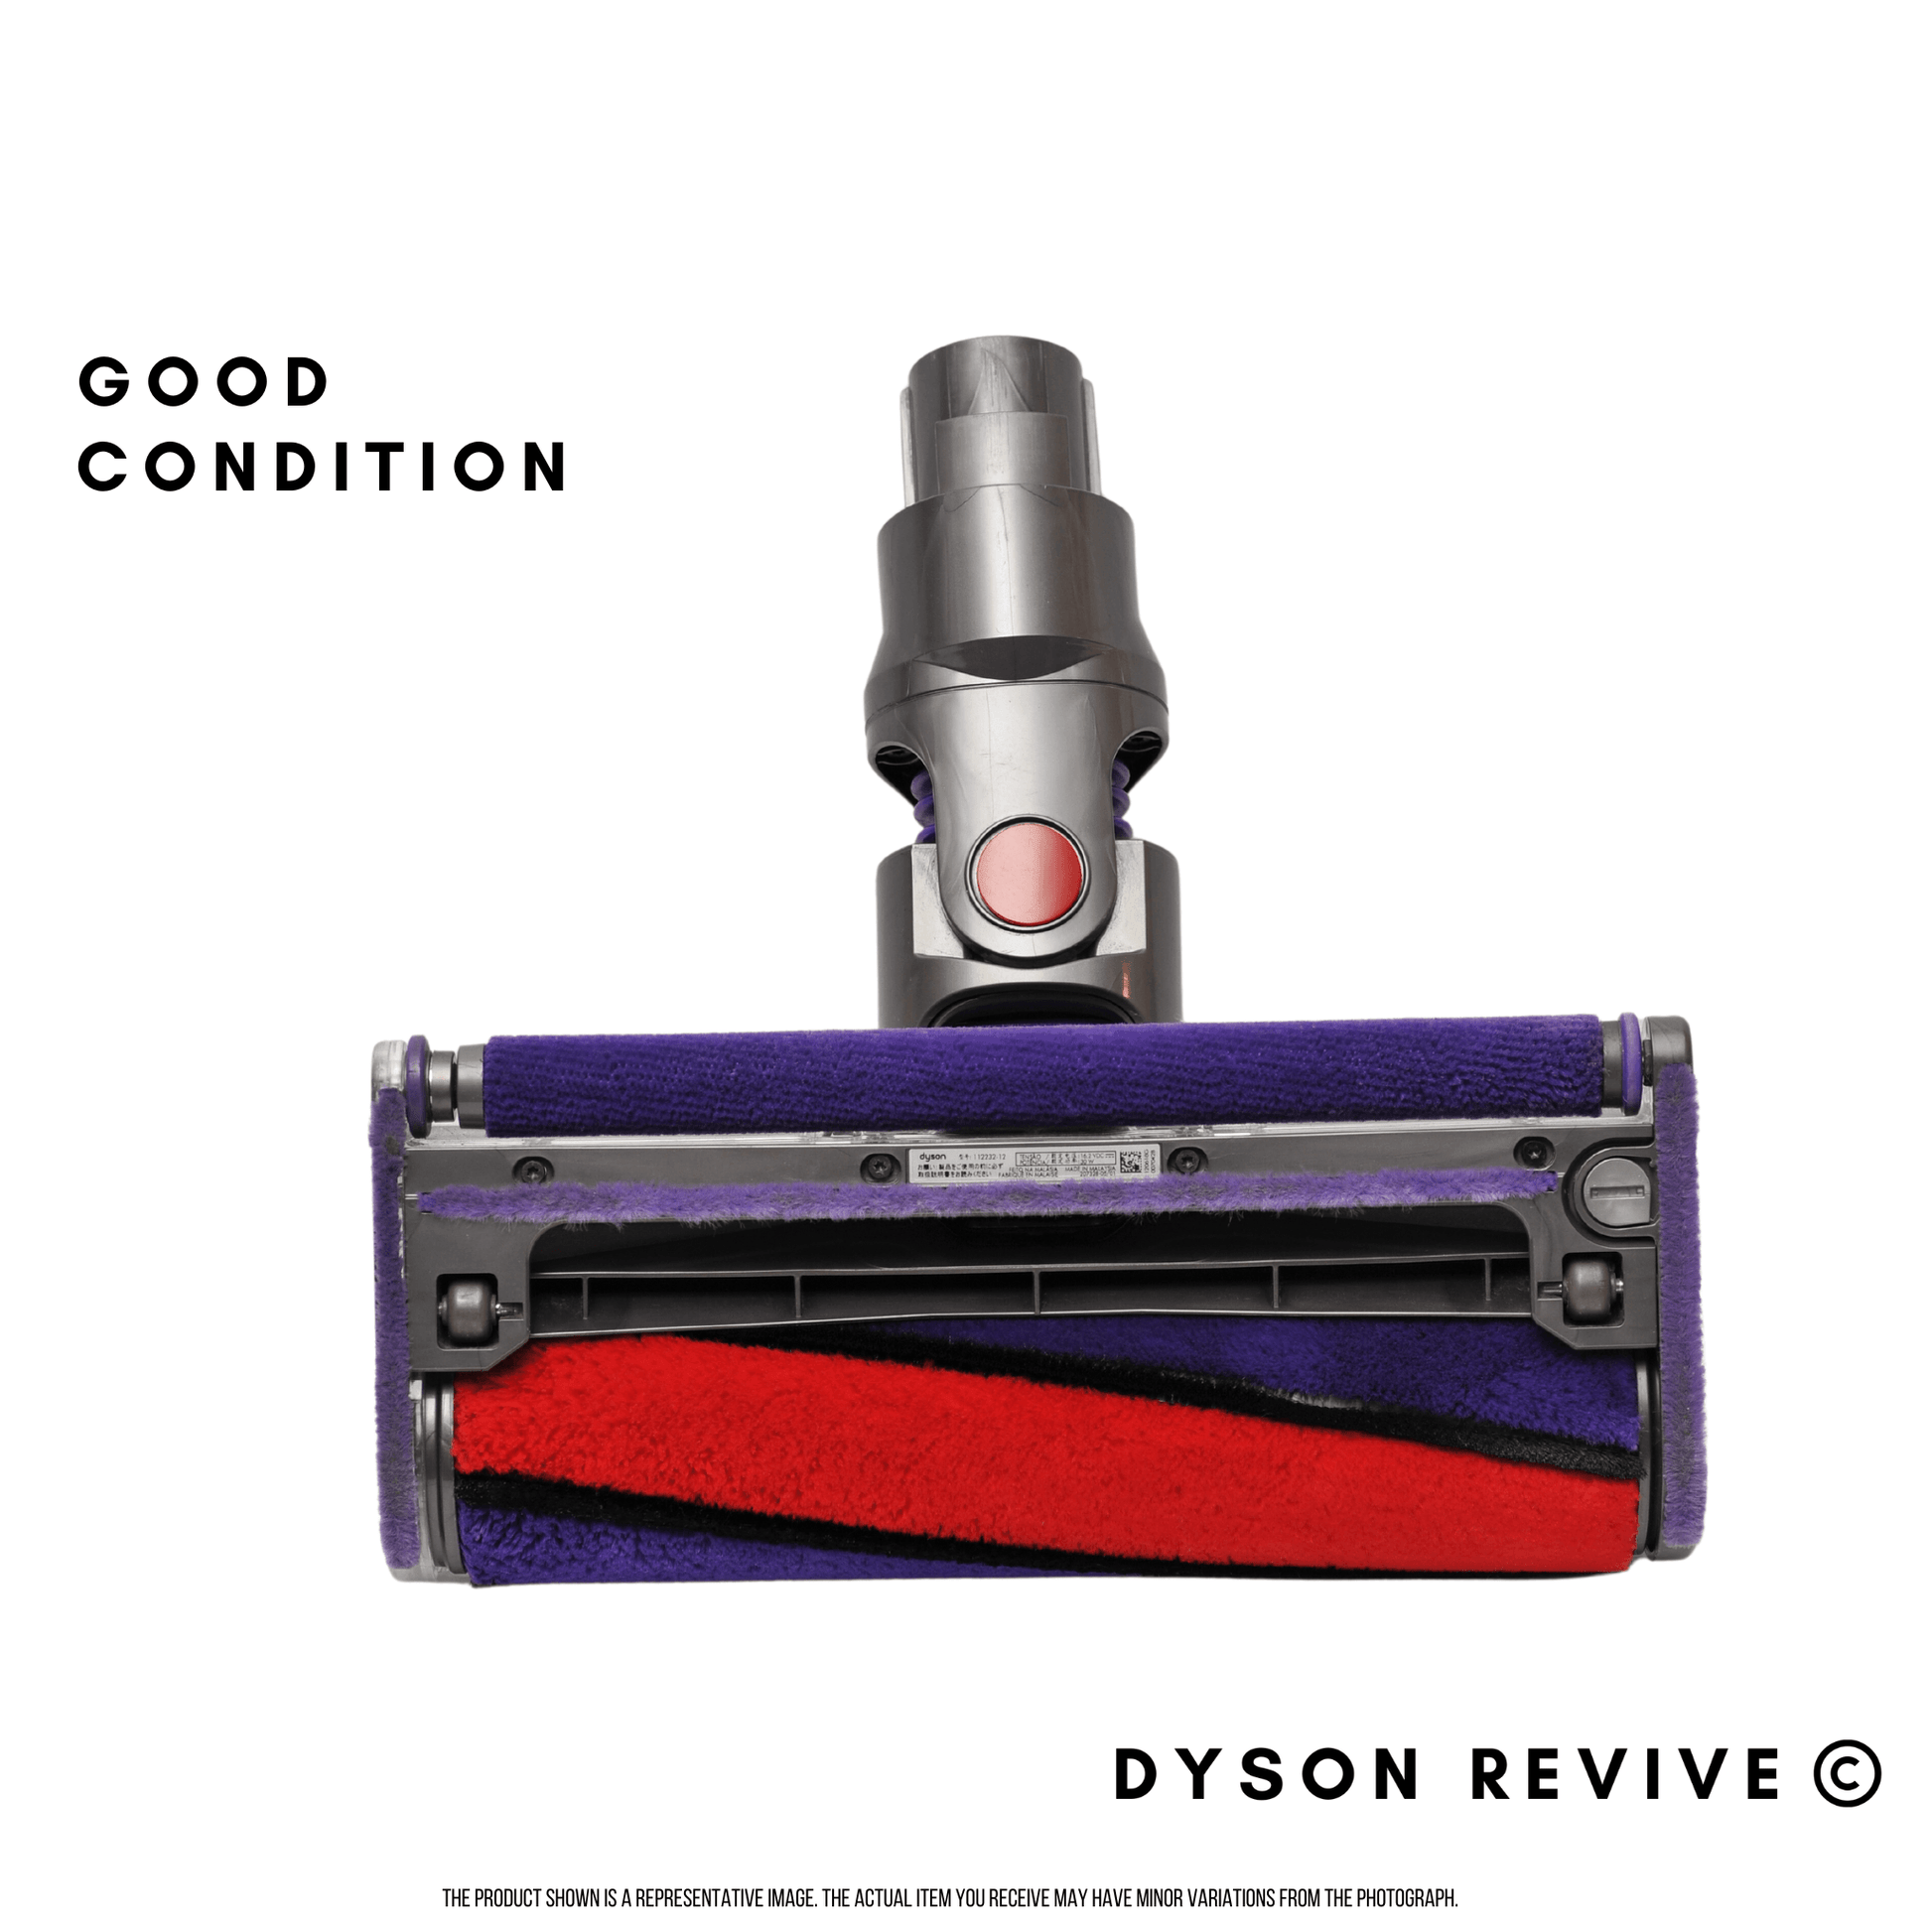 Genuine Dyson V10, V11 Refurbished Soft Roller Fluffy Cleaner Head also fits V8 - Dyson Revive